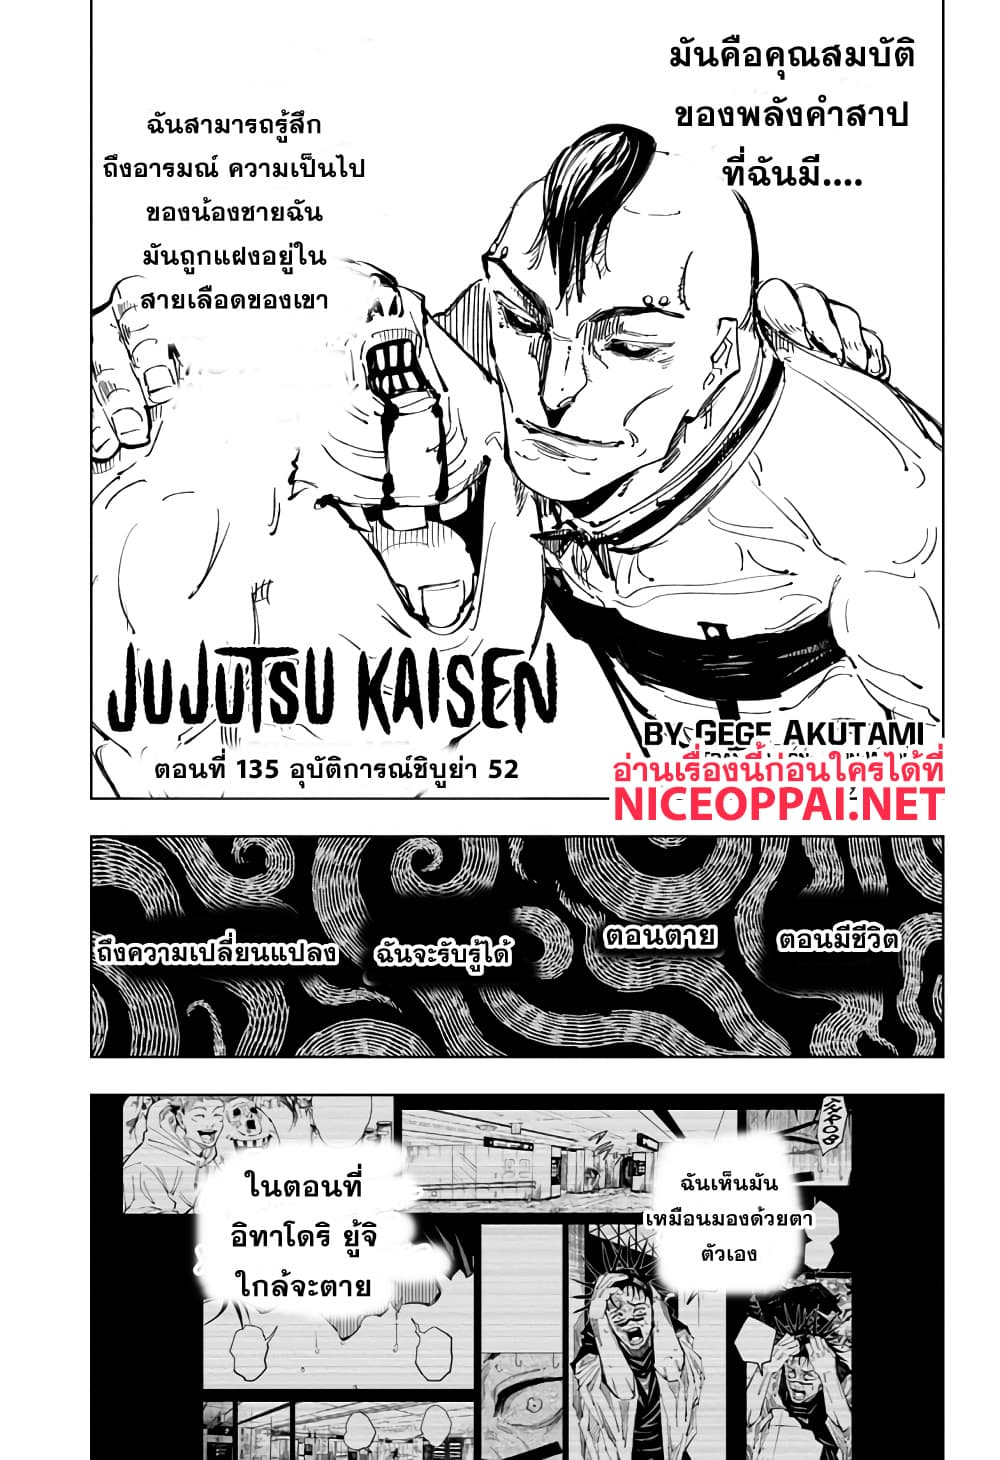 Jujutsu Kaisen มหาเวทย์ผนึกมาร 135-อุบัติการณ์ชิบุย่า 52